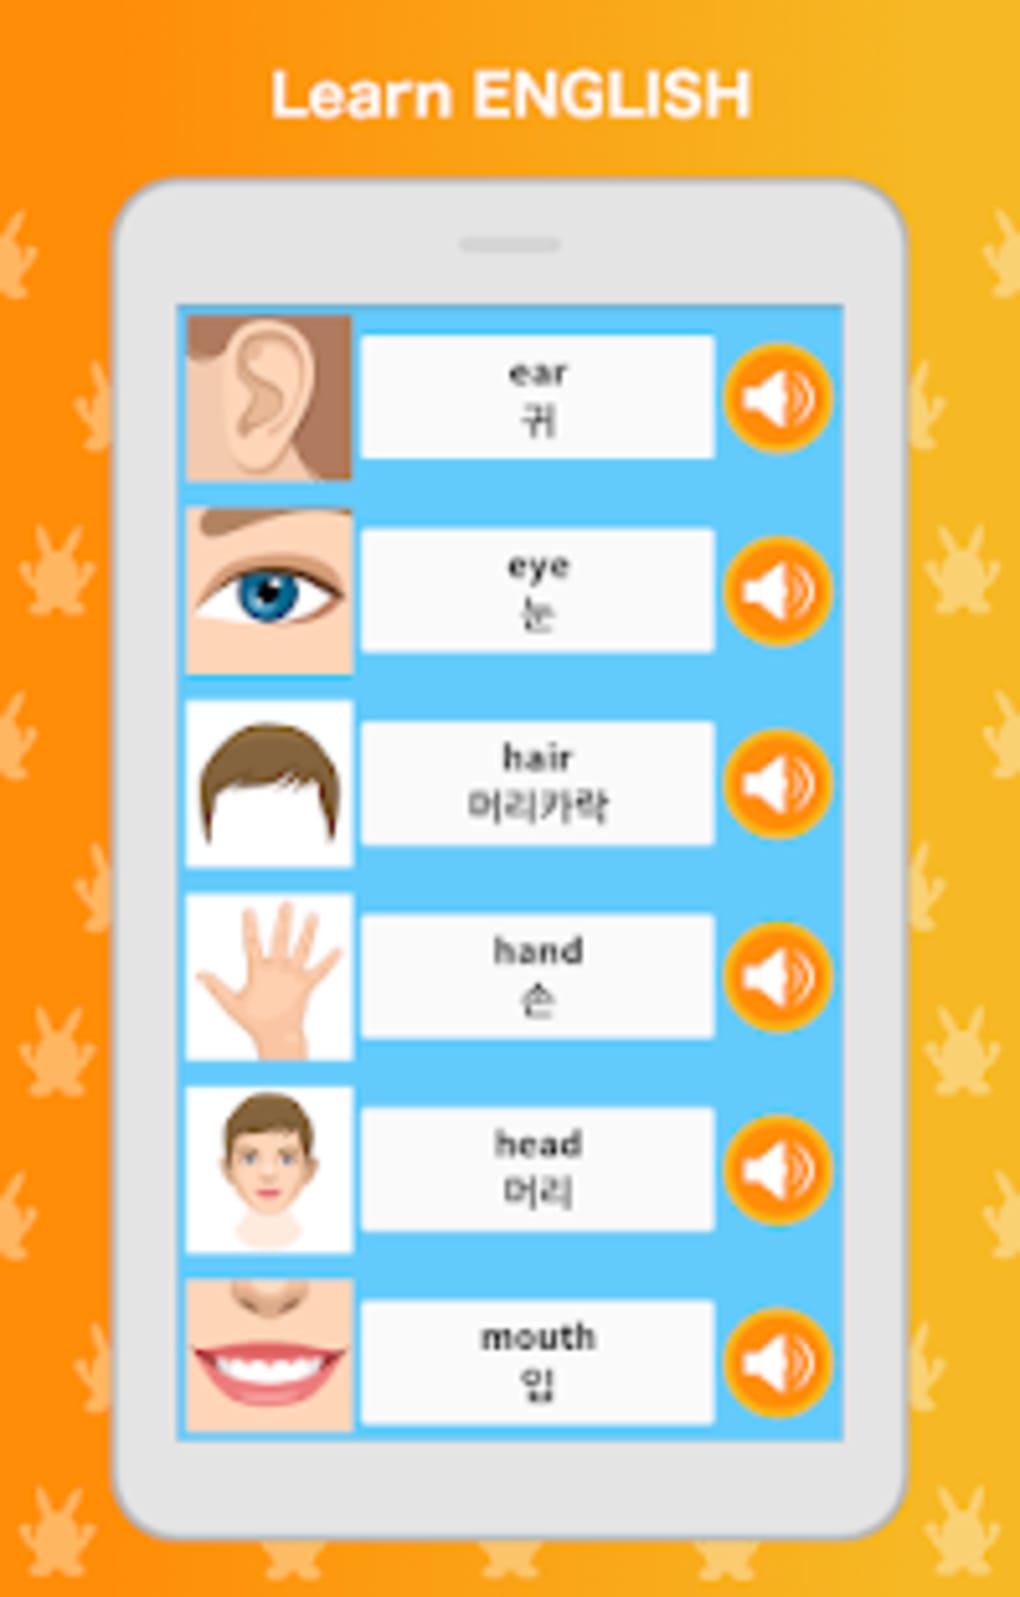 Learn English - Language Grammar APK pour Android - Télécharger